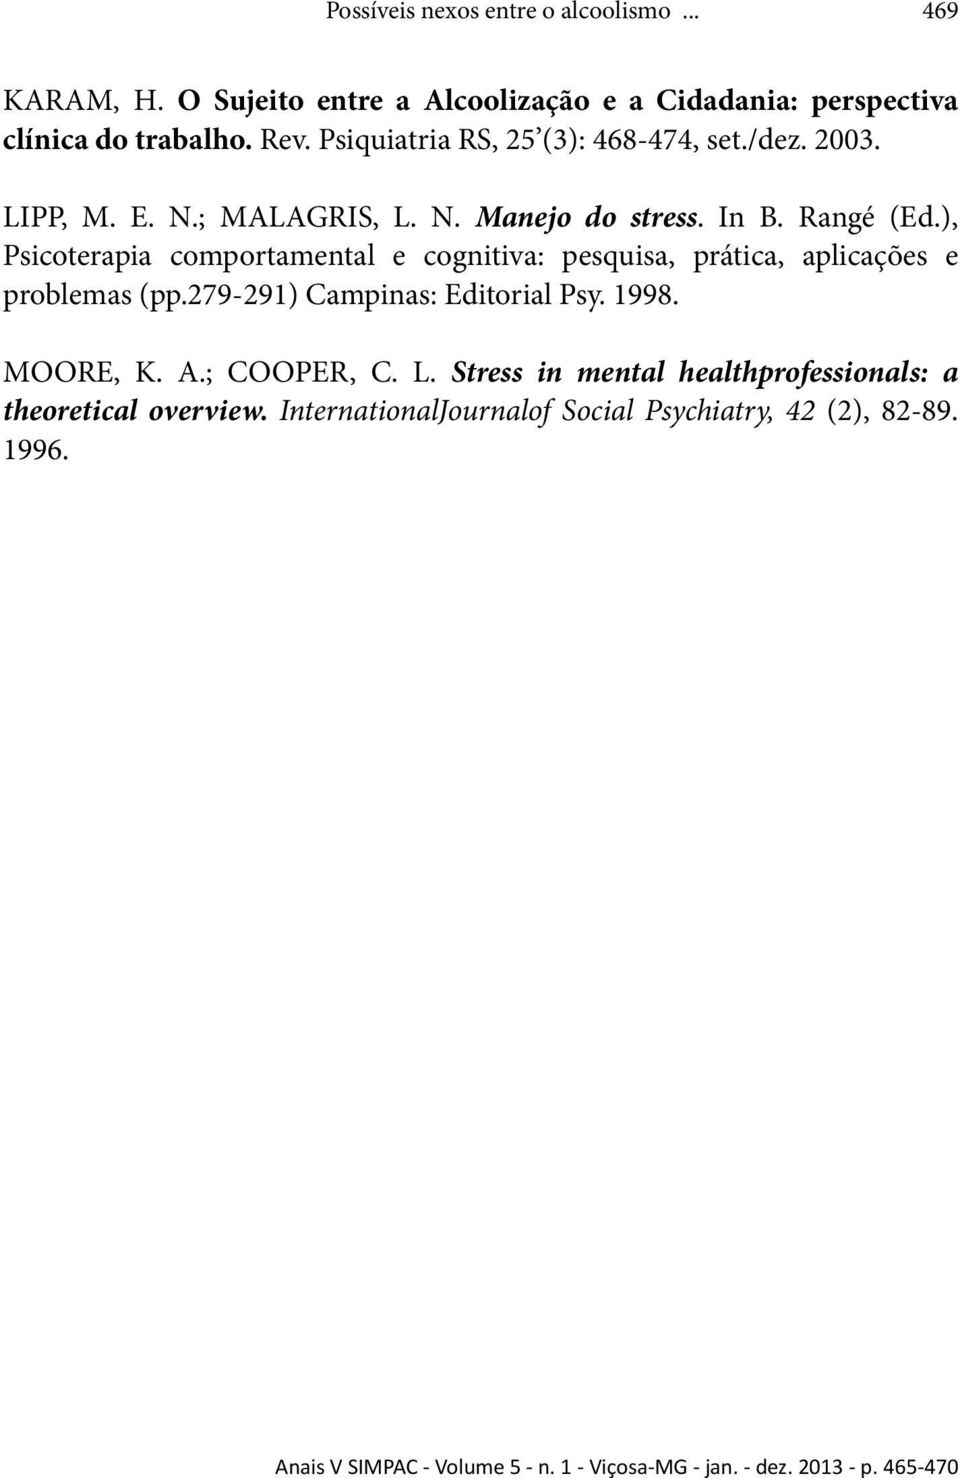 ), Psicoterapia comportamental e cognitiva: pesquisa, prática, aplicações e problemas (pp.279-291) Campinas: Editorial Psy. 1998.